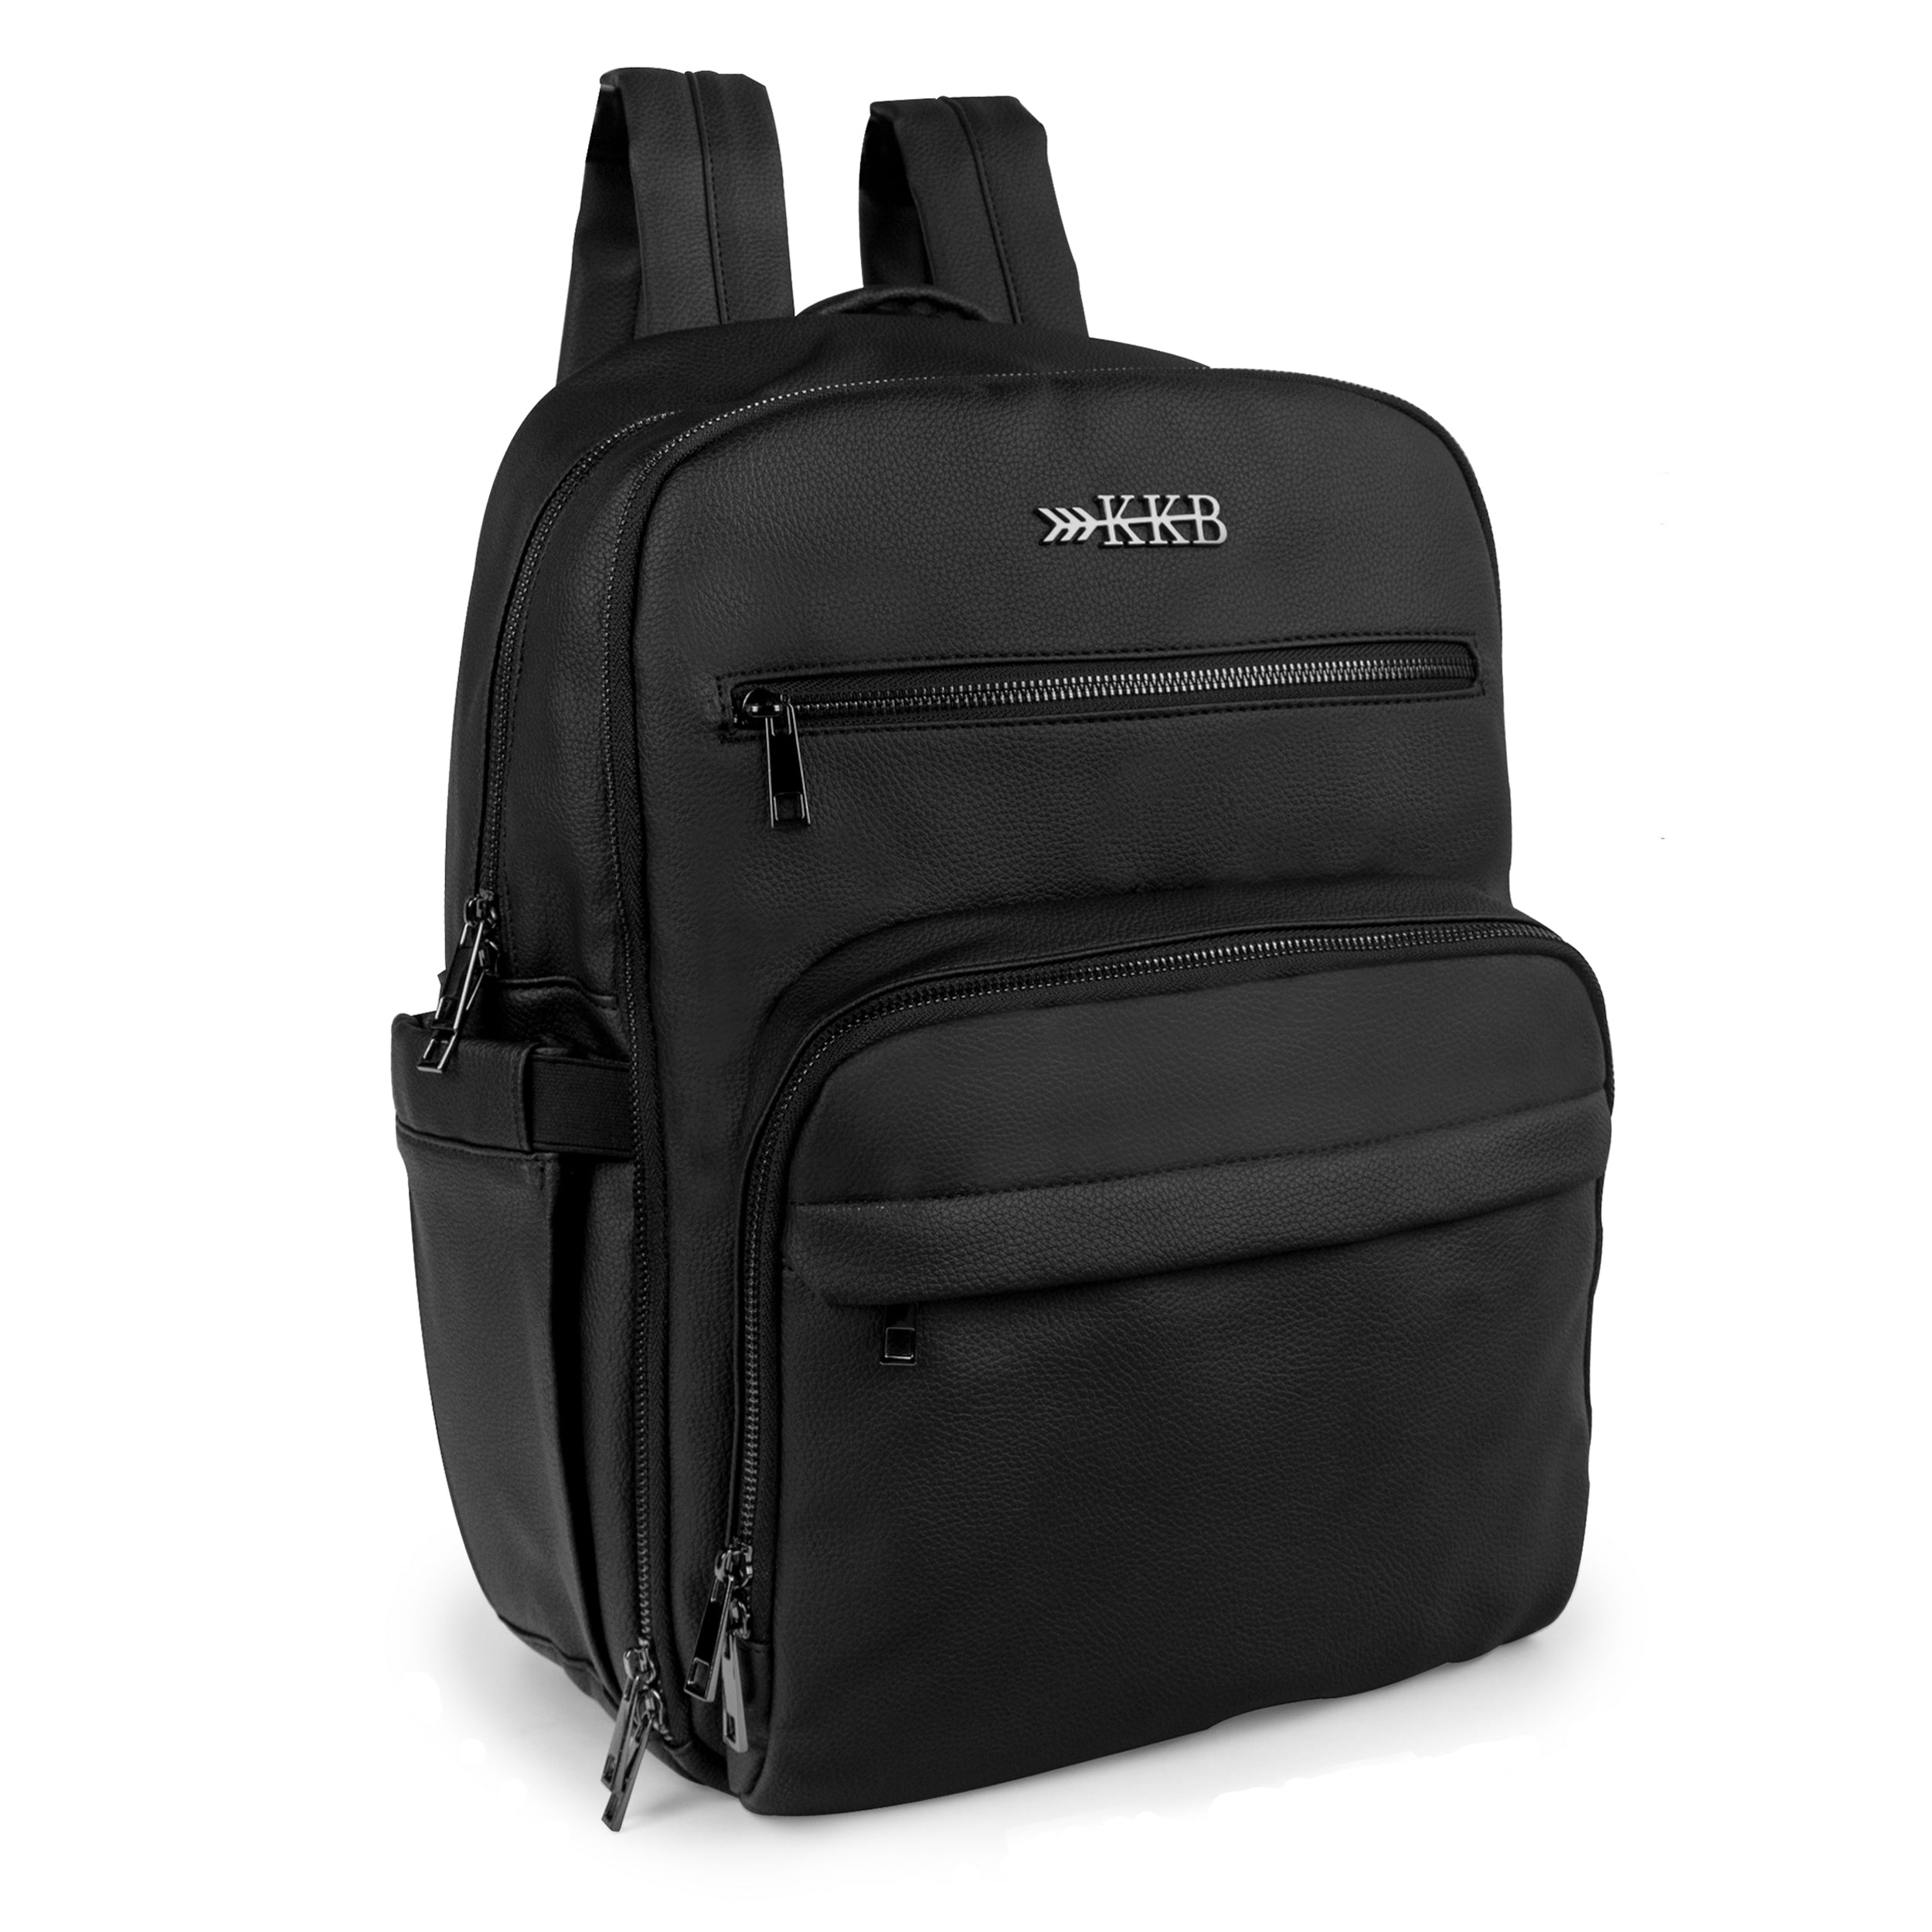 KKB Vegan Leather Diaper Bag Backpack (Blackout)